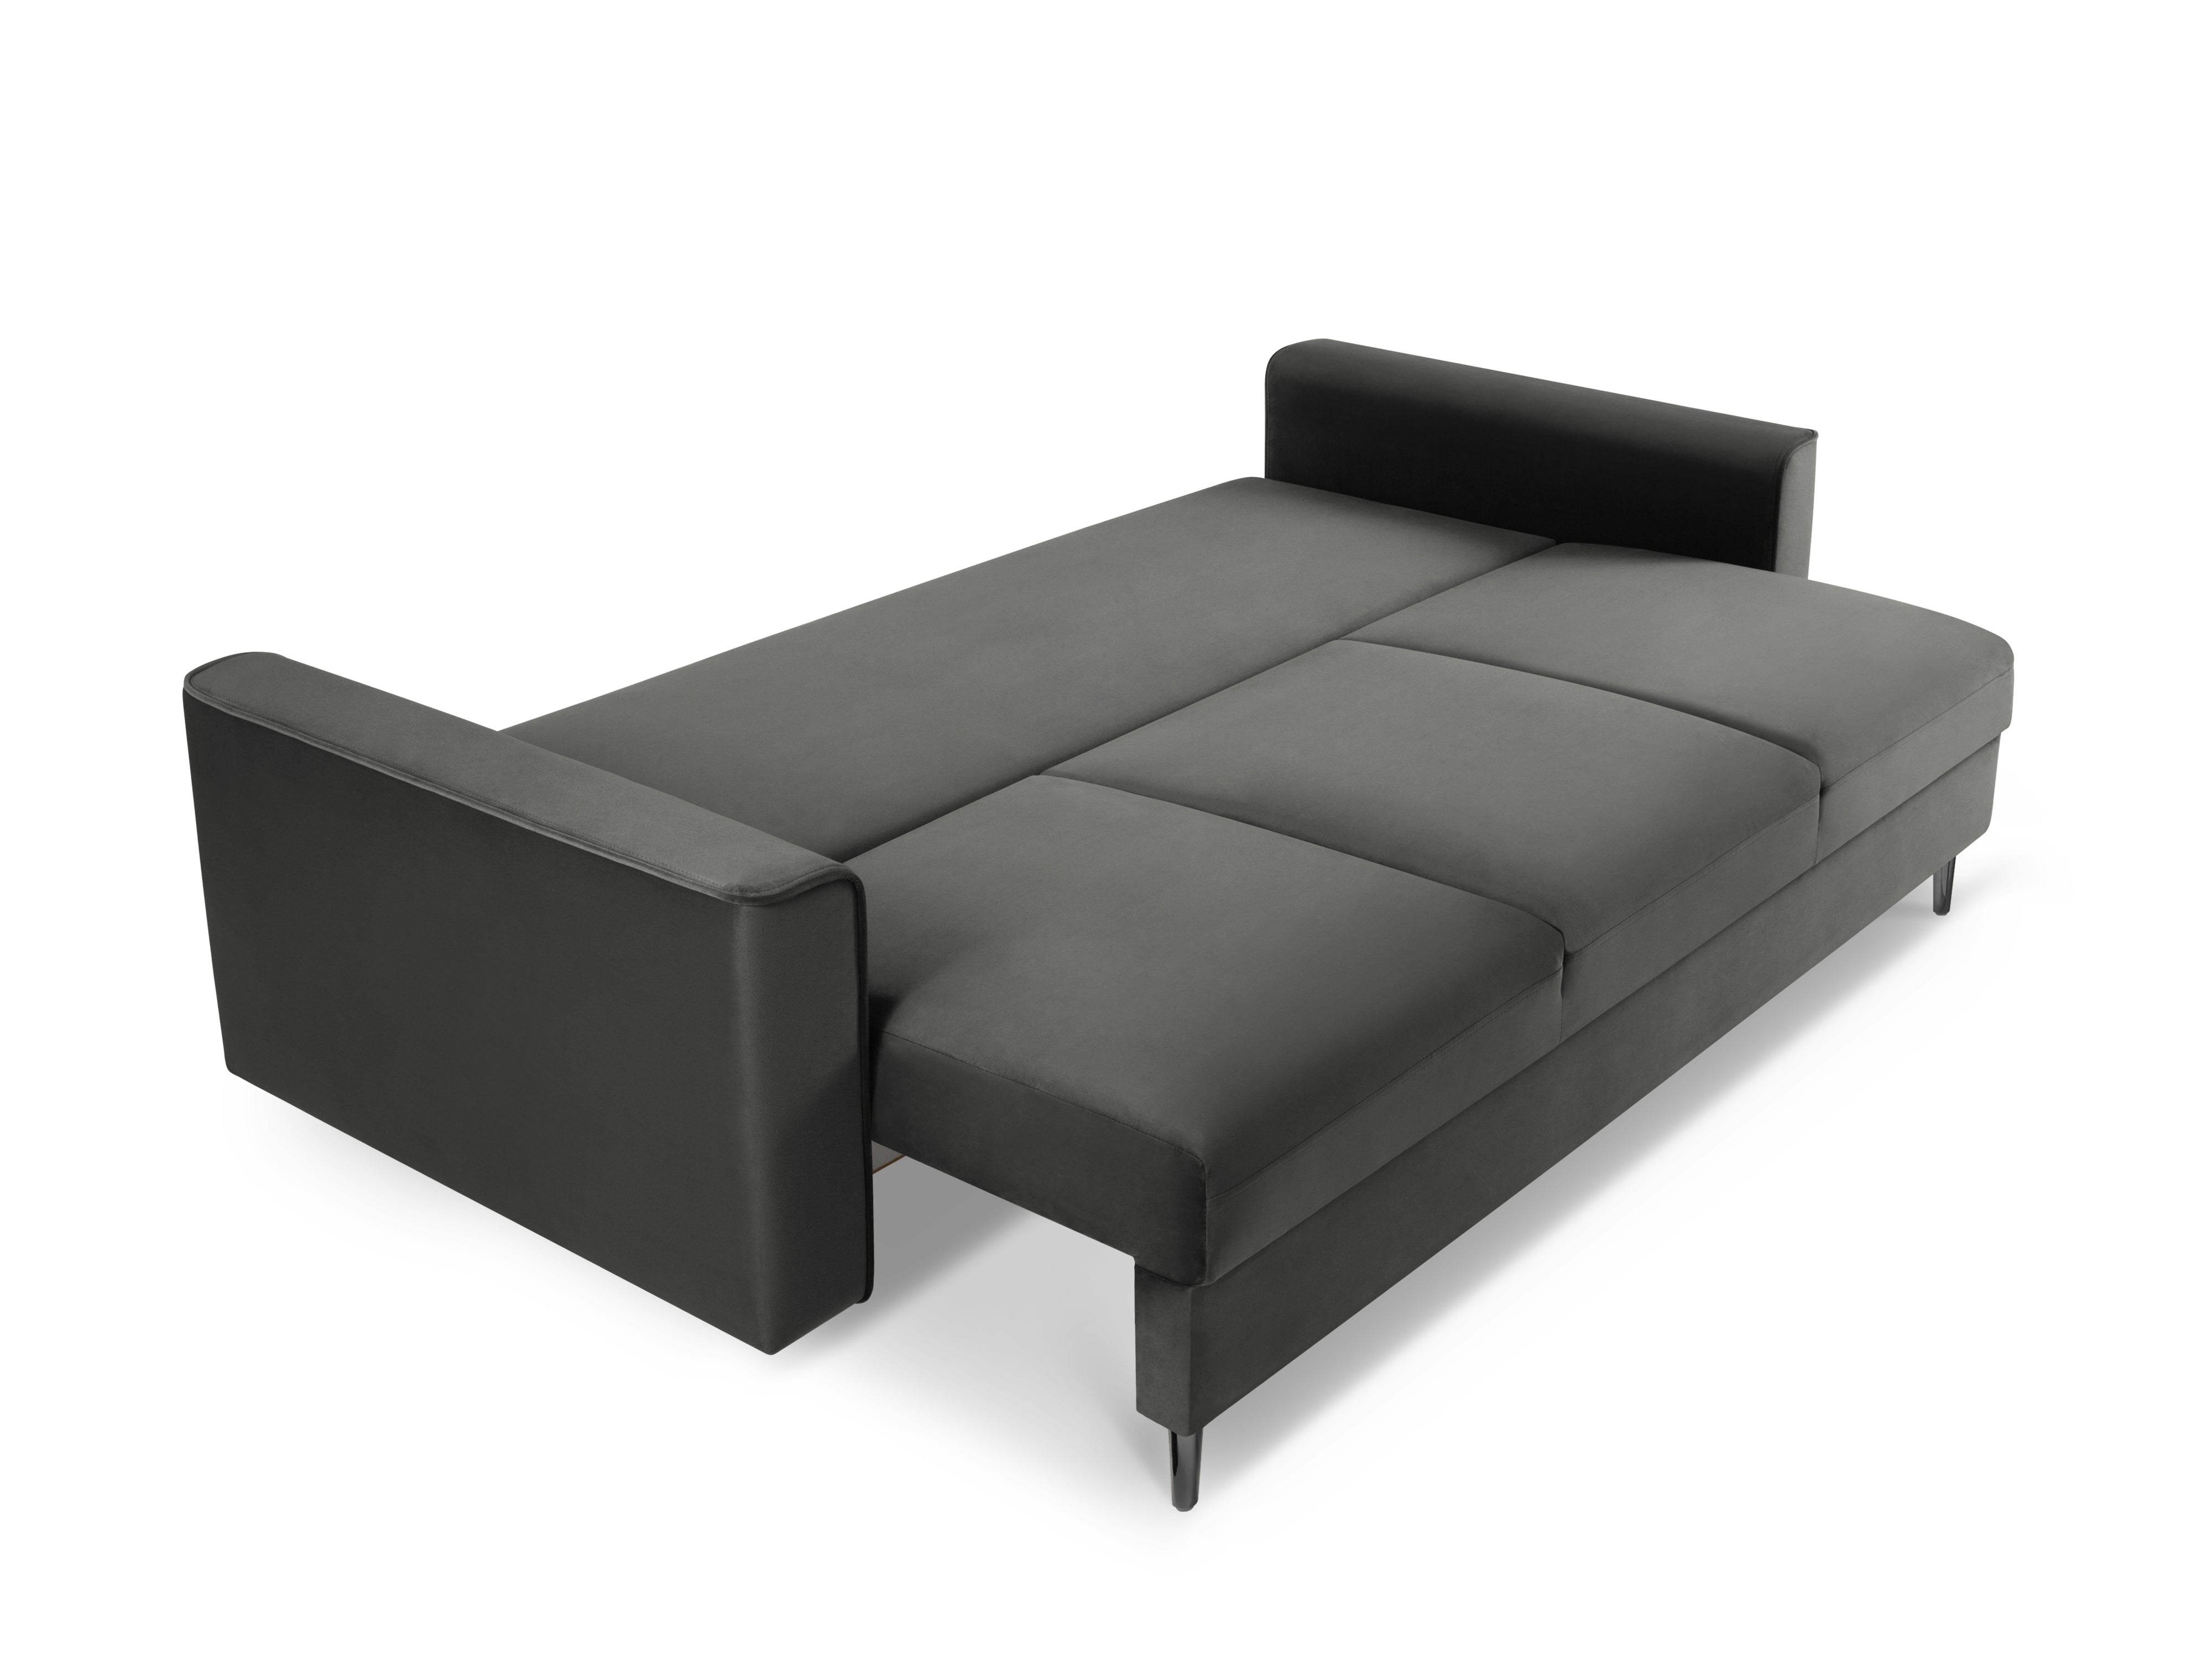 Folded velvet gray sofa